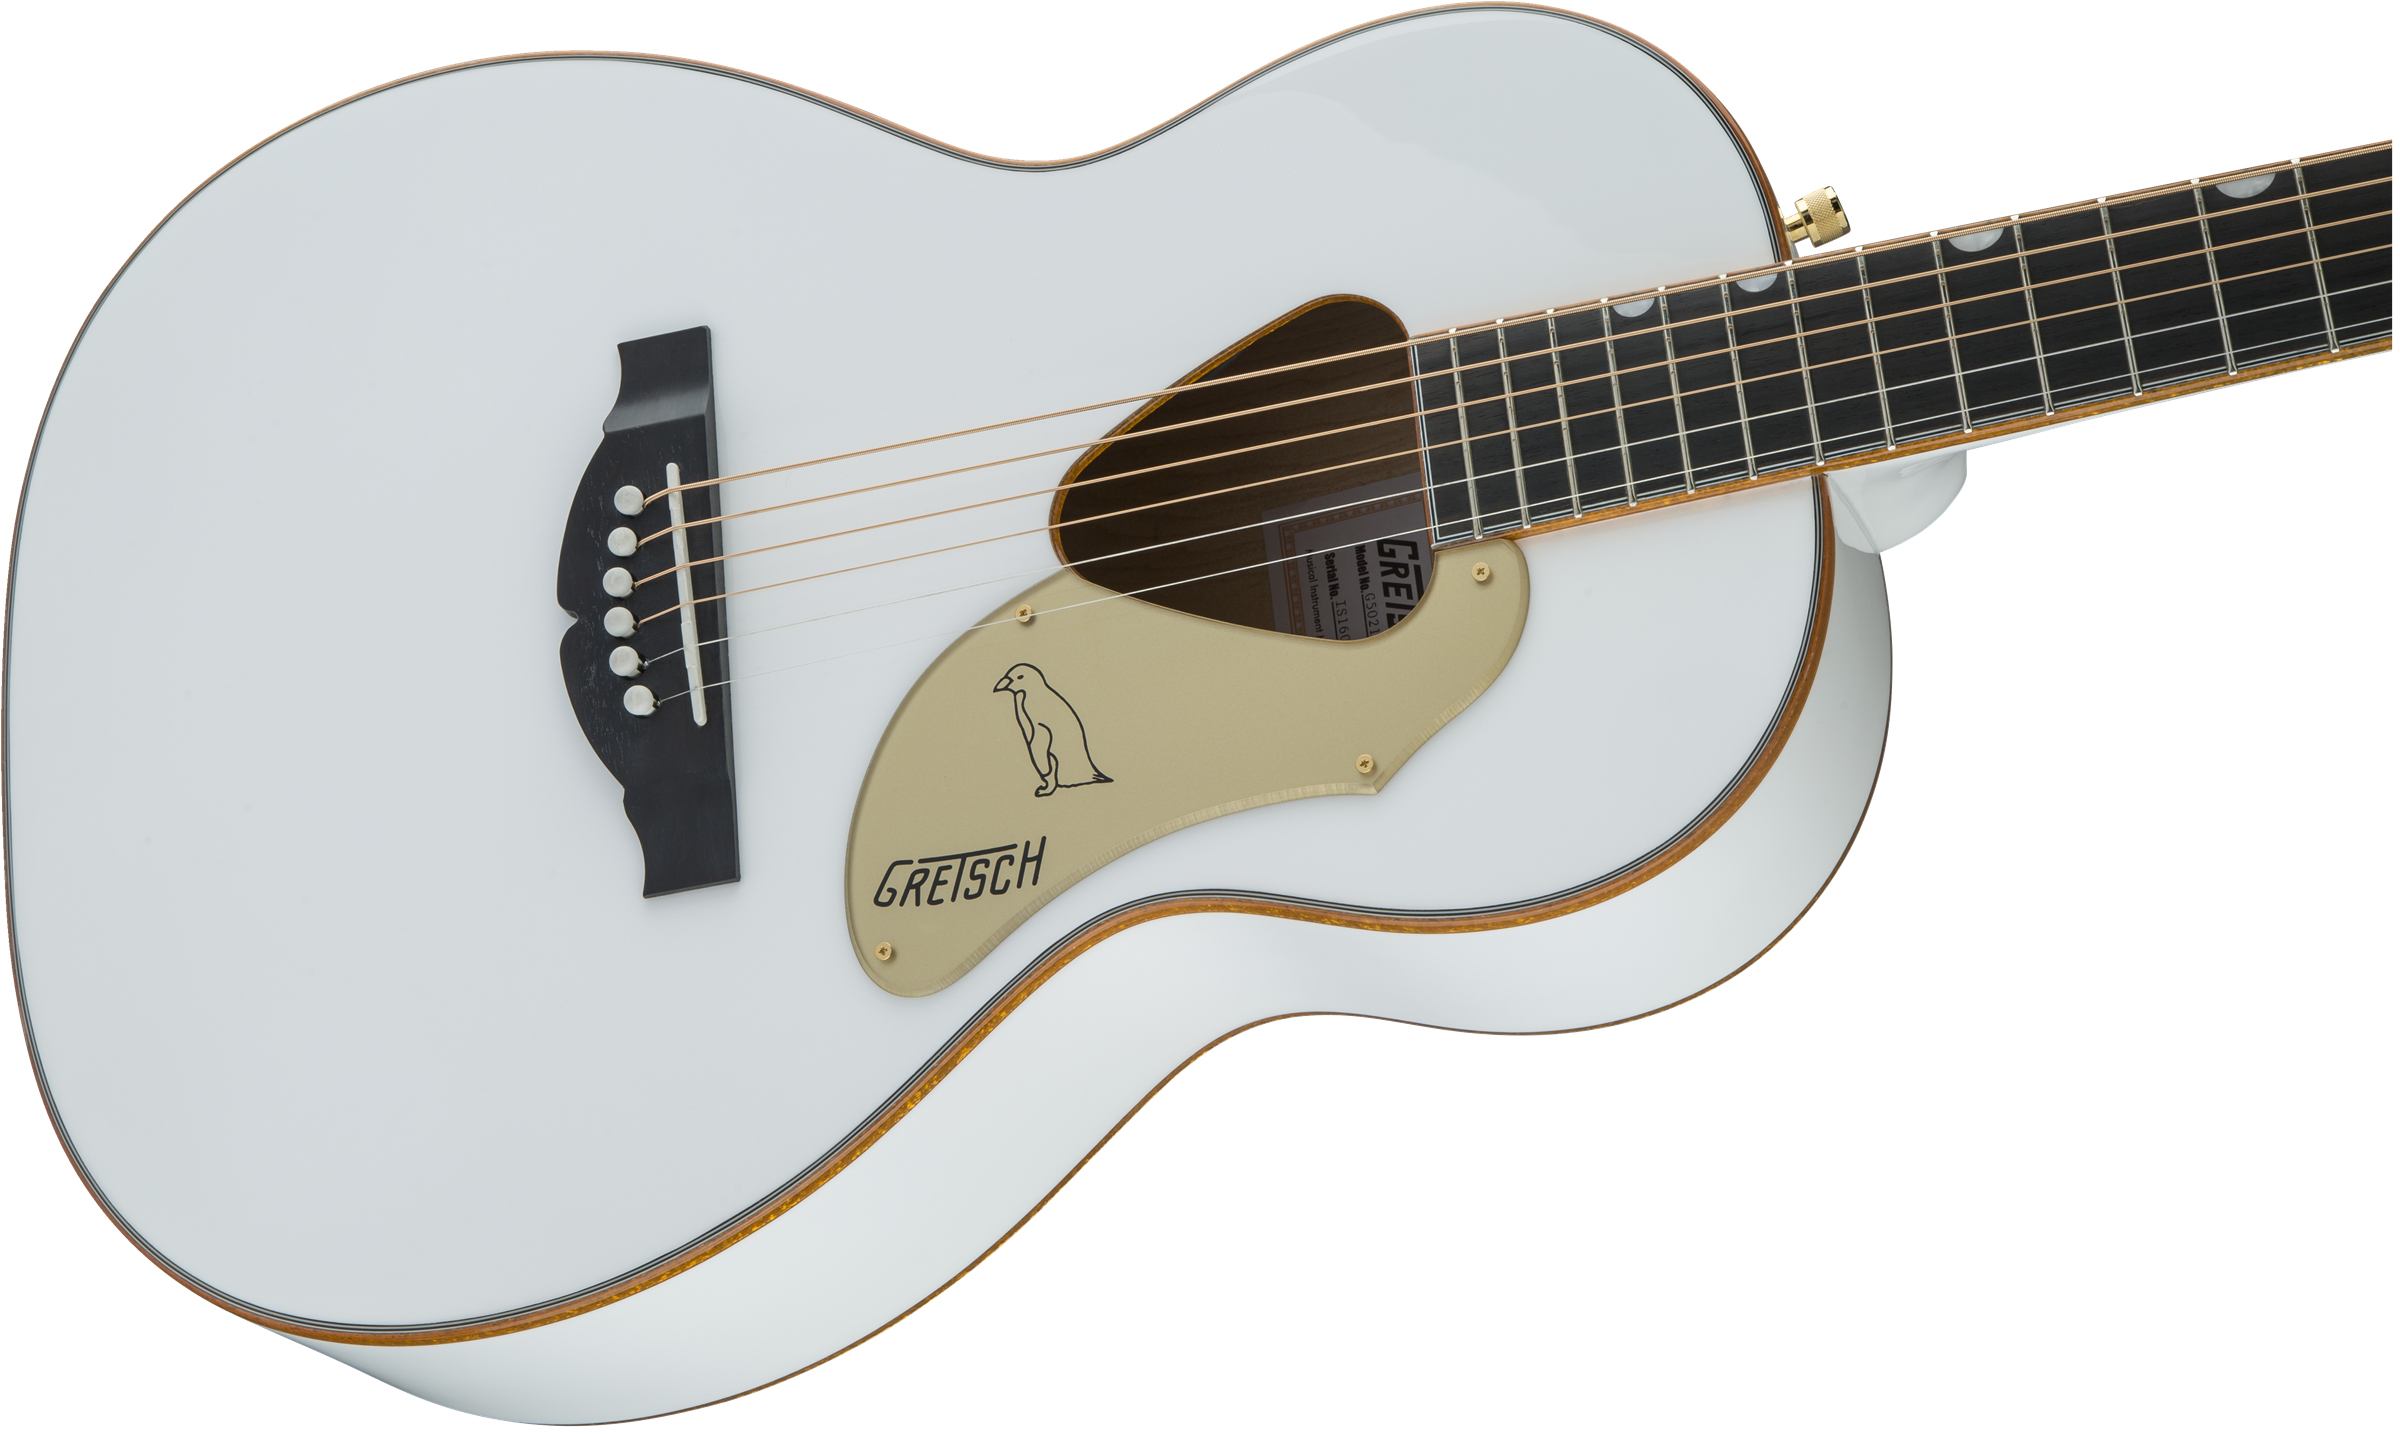 Gretsch G5021wpe Rancher Penguin Parlor Epicea Erable Lau - White - Electro acoustic guitar - Variation 3